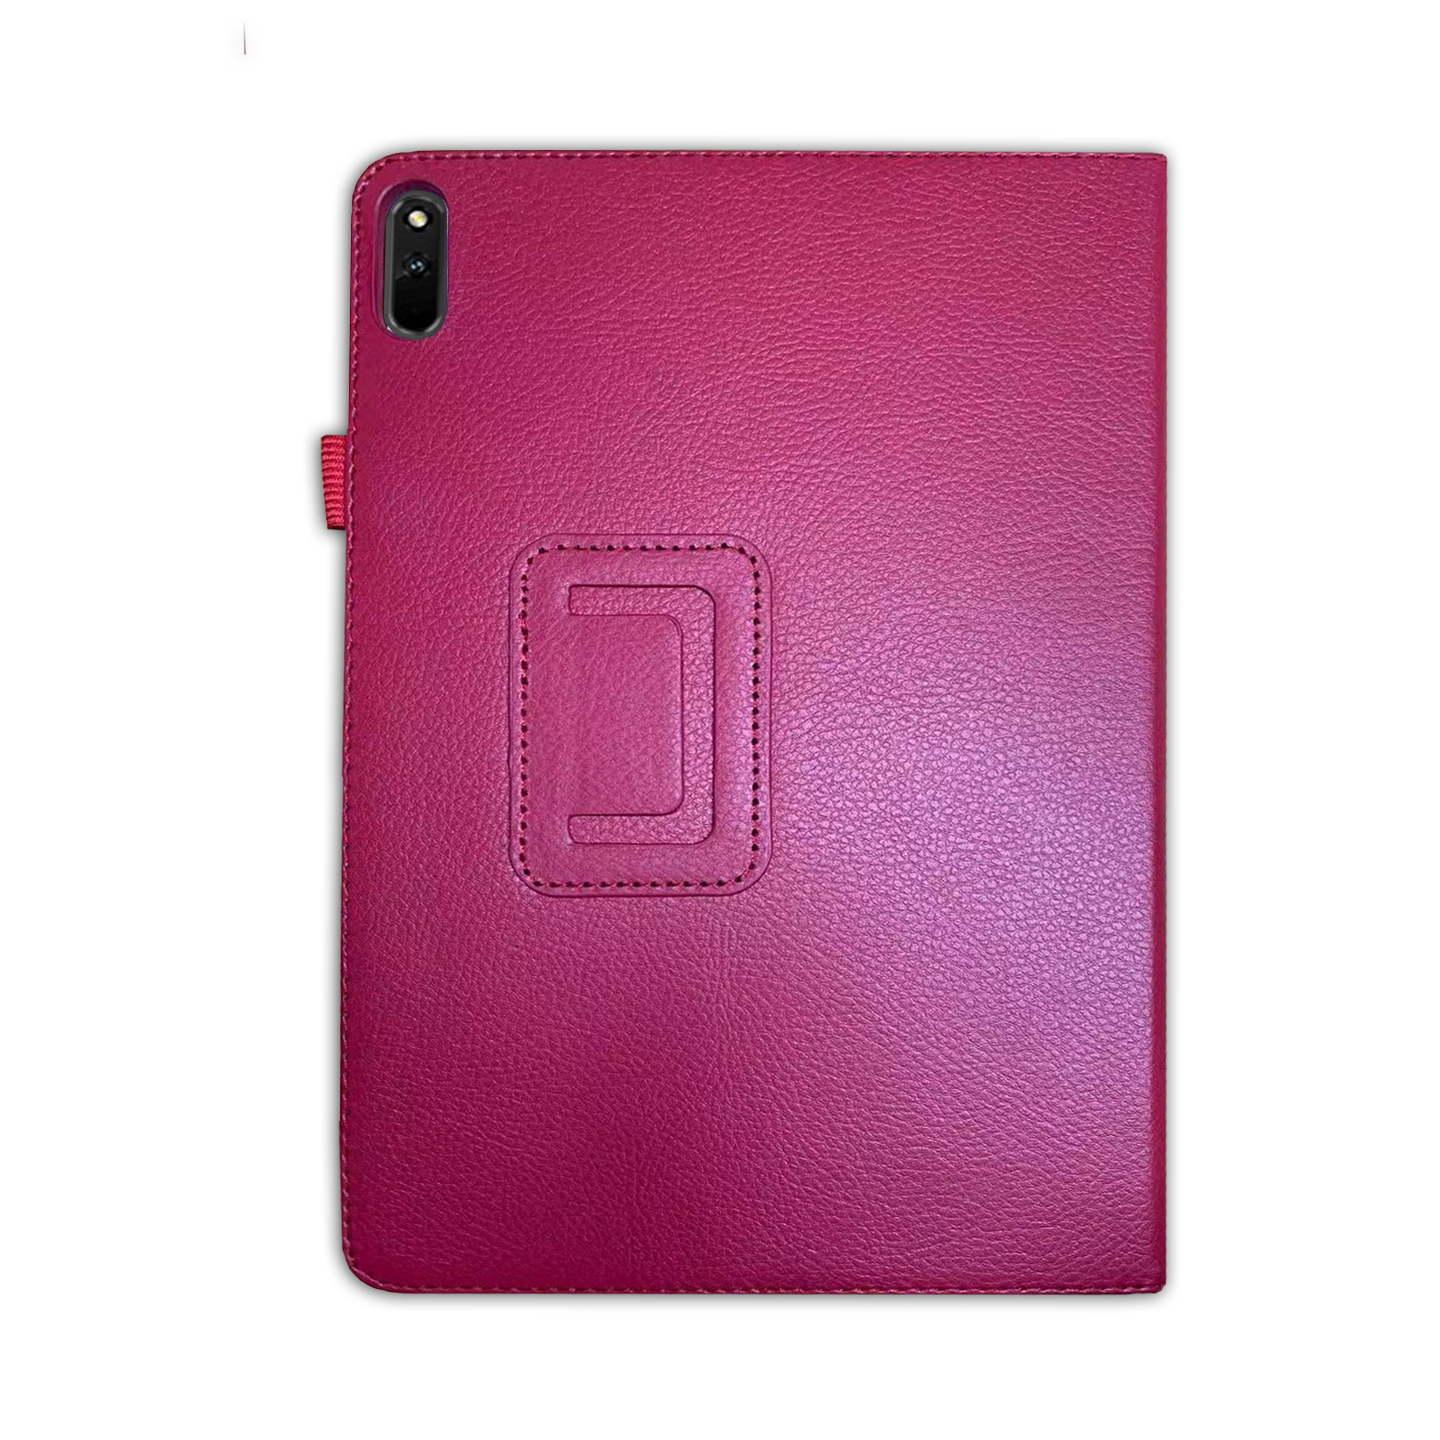 Kunstleder, 2021 11 LOBWERK Zoll Pink Huawei für 11 Hülle Schutzhülle Bookcover MatePad